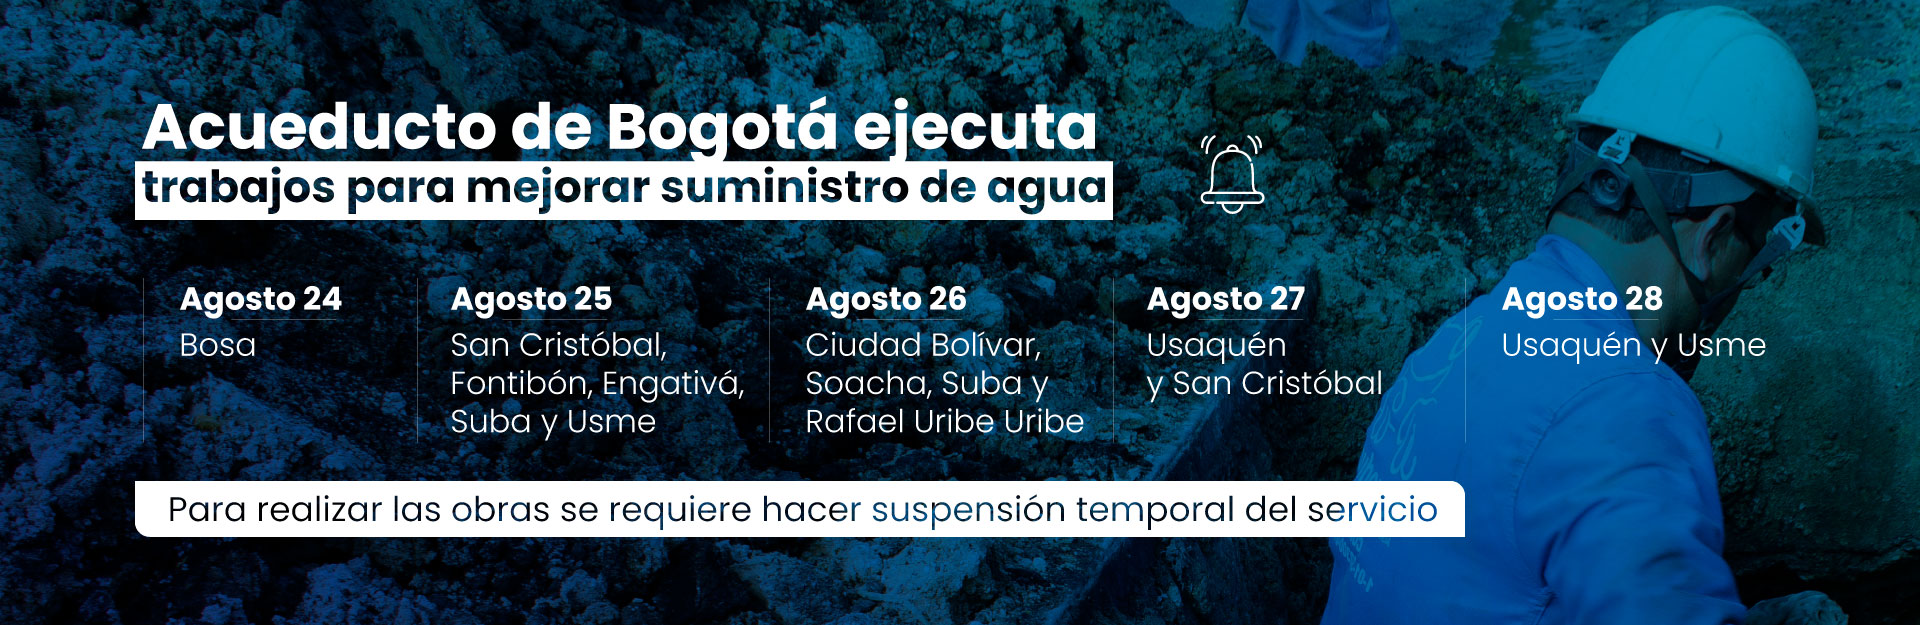 Acueducto de Bogotá ejecutará trabajos para mejorar suministro de agua